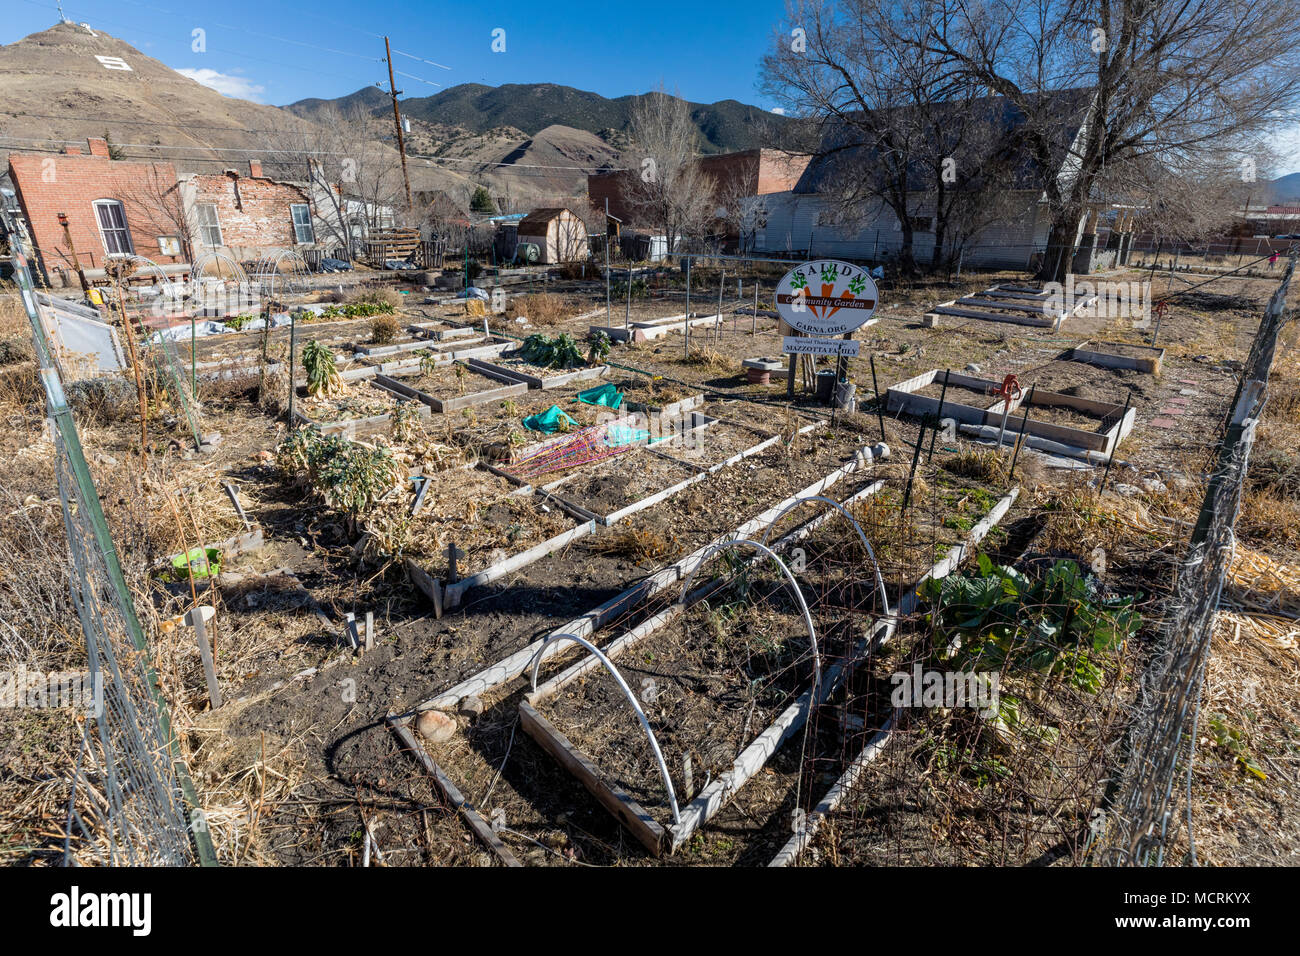 Dicembre; Salida comunità giardino; Salida, Colorado, STATI UNITI D'AMERICA Foto Stock